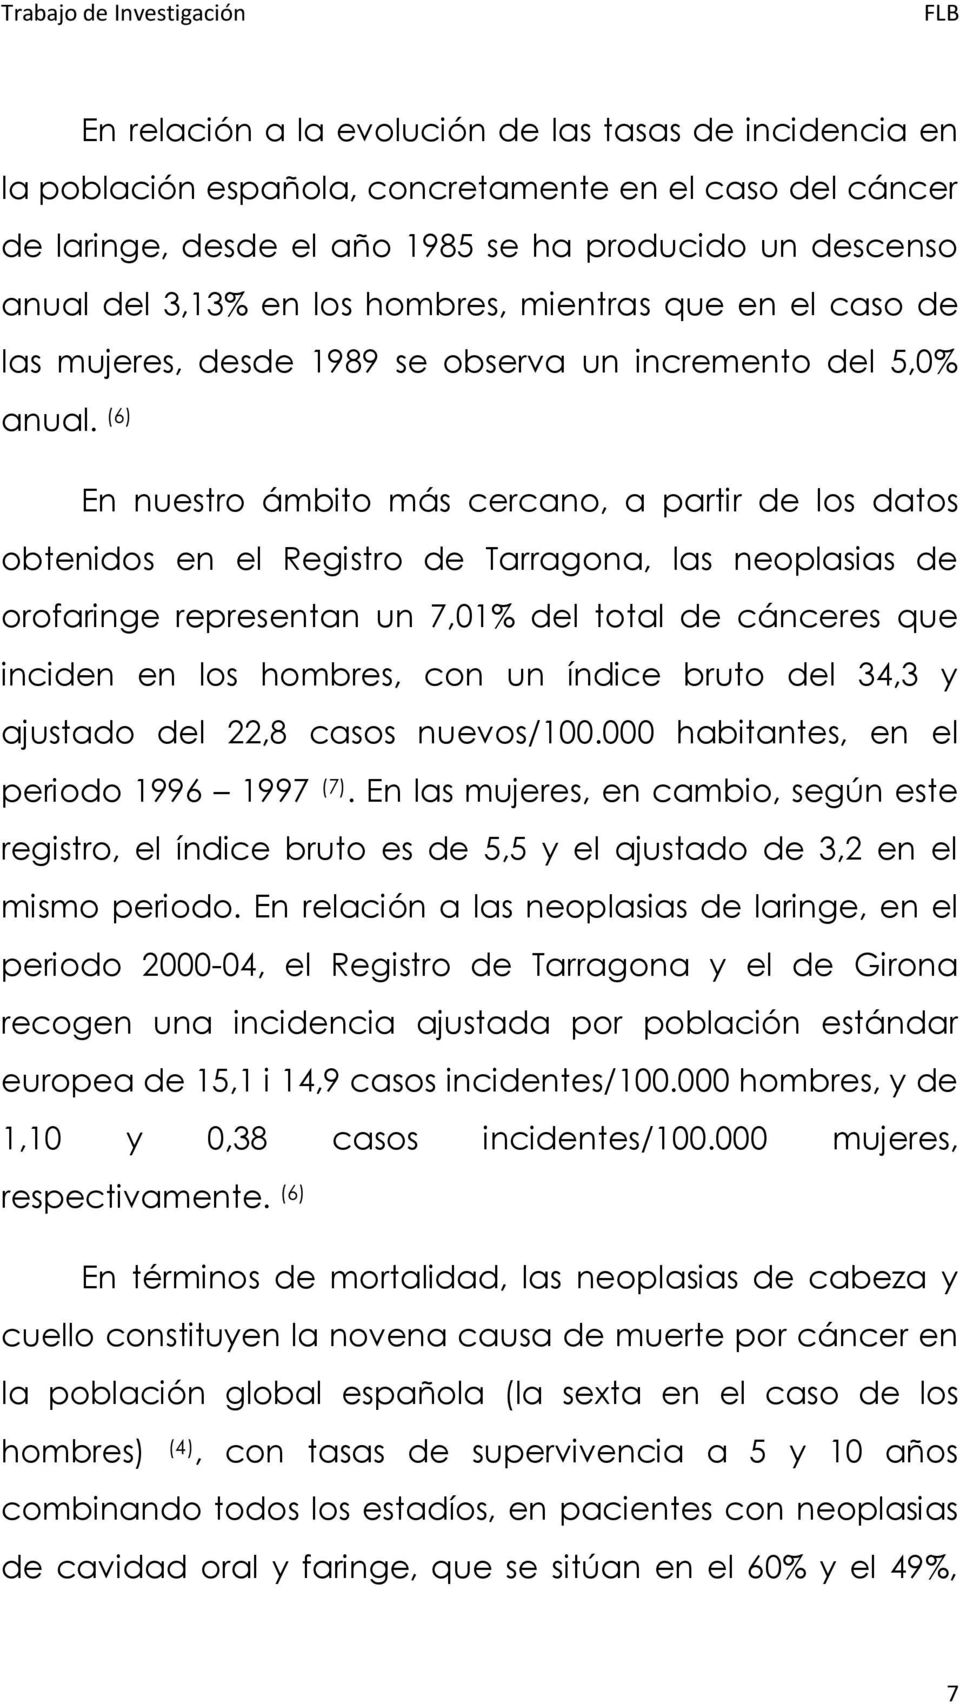 (6) En nuestro ámbito más cercano, a partir de los datos obtenidos en el Registro de Tarragona, las neoplasias de orofaringe representan un 7,01% del total de cánceres que inciden en los hombres, con